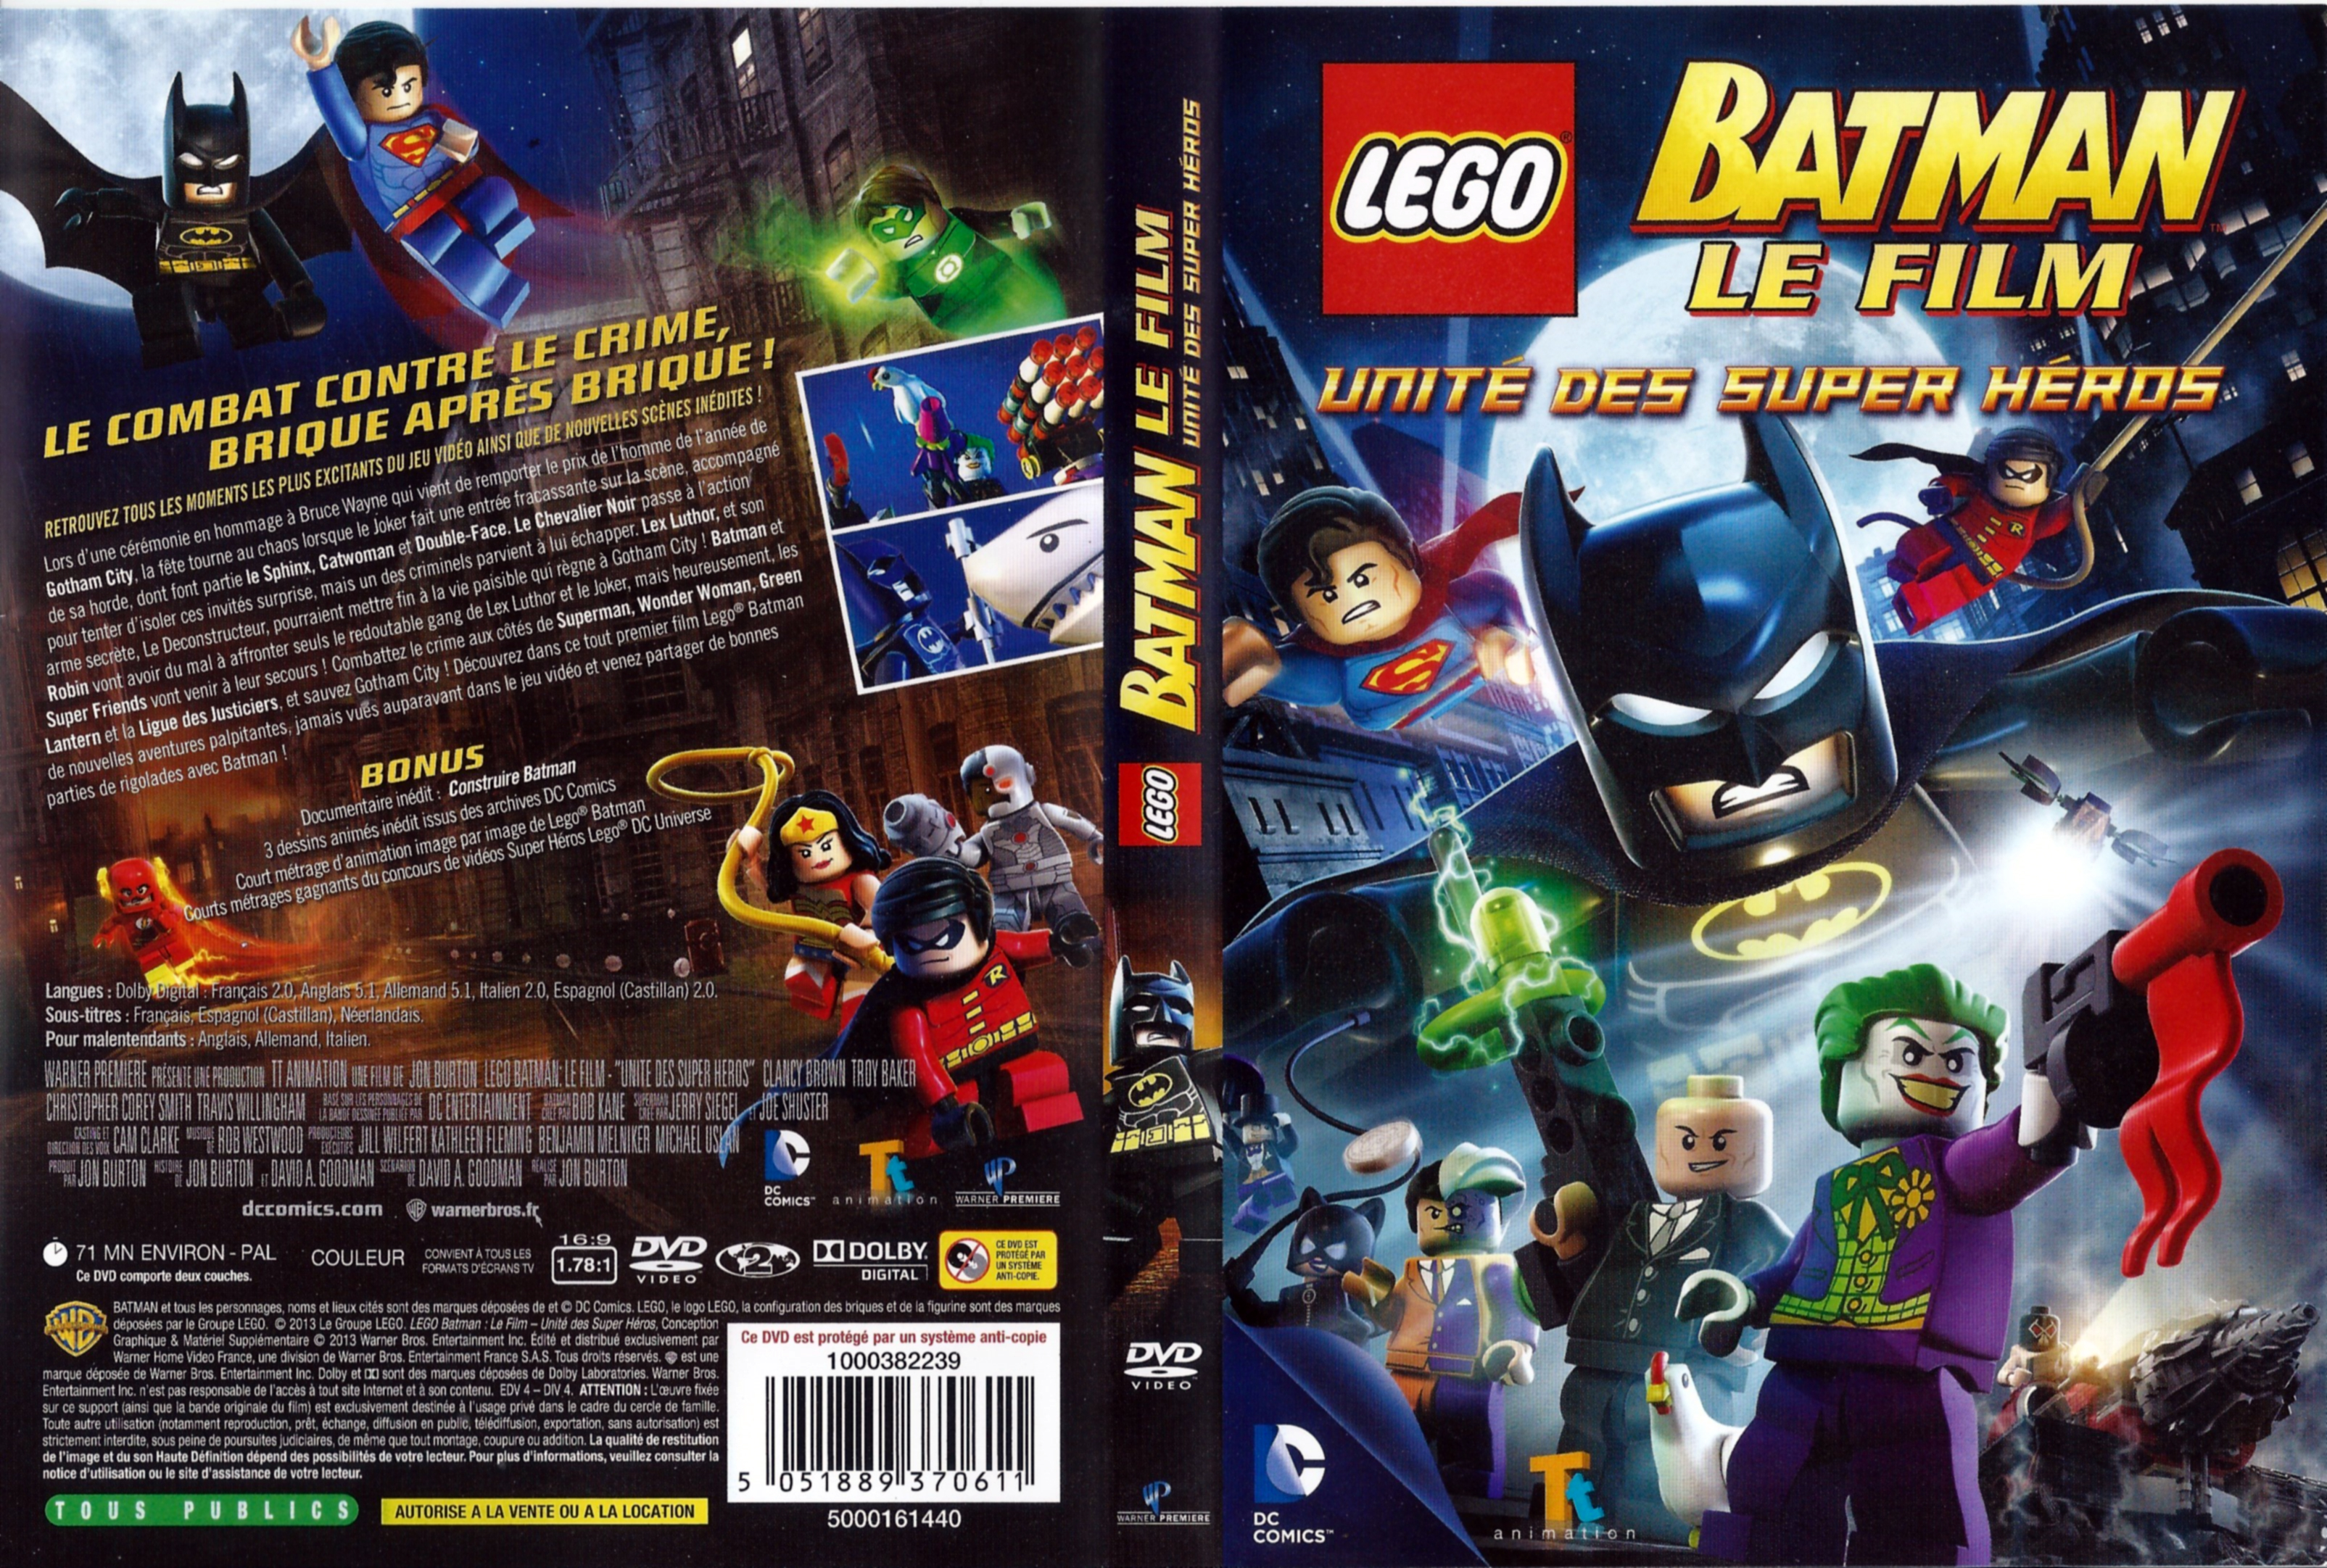 Jaquette DVD de LEGO Batman le film - Cinéma Passion